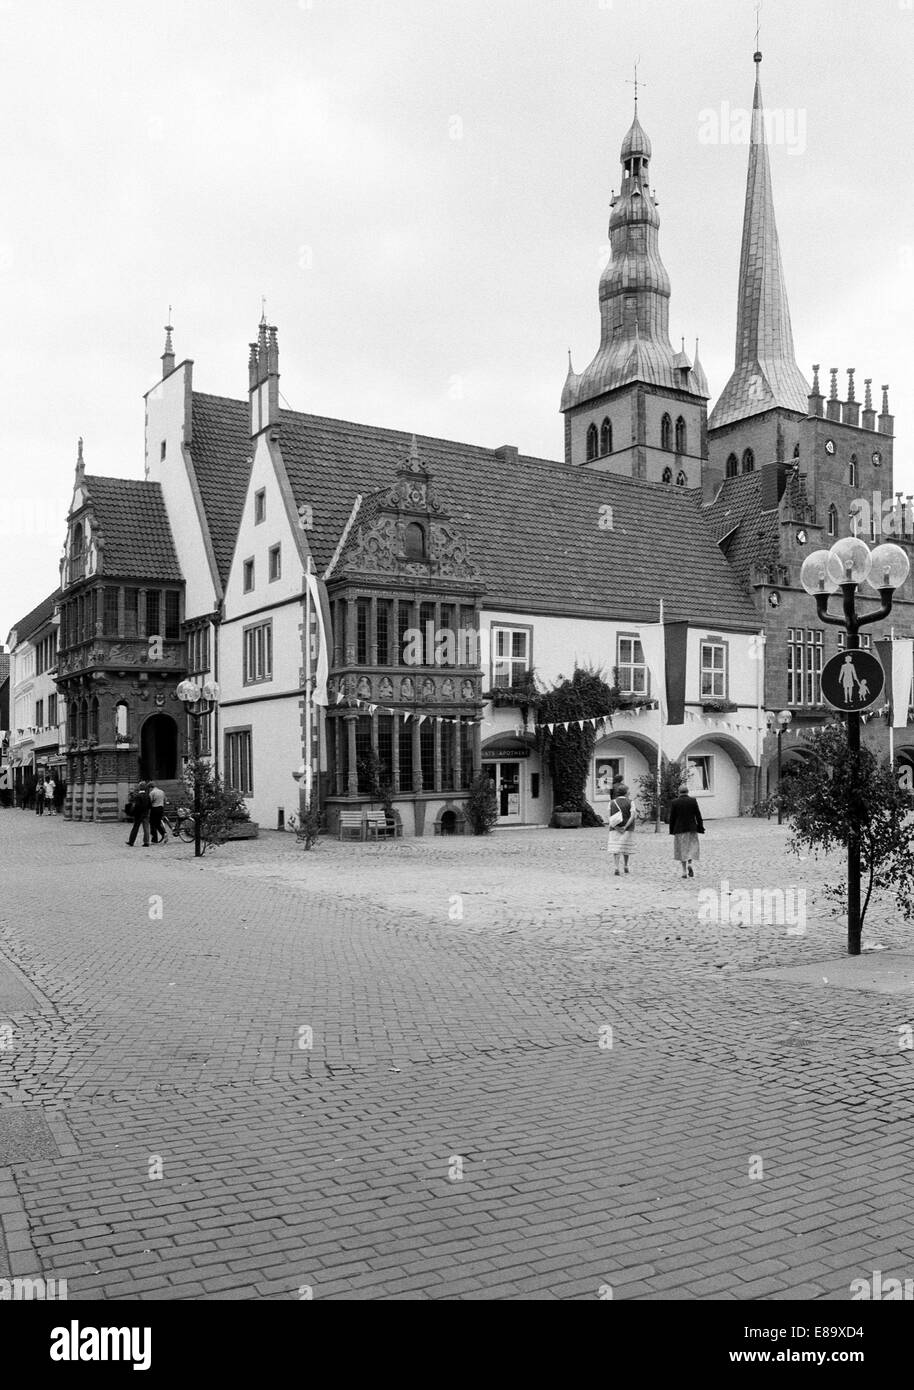 Achtziger Jahre, UNESCO Weltkulturerbe, Rathaus am Marktplatz von Lemgo, Ostwestfalen-Lippe, Nordrhein-Westfalen, dahinter die Tuerme der Kirche St. N Stock Photo